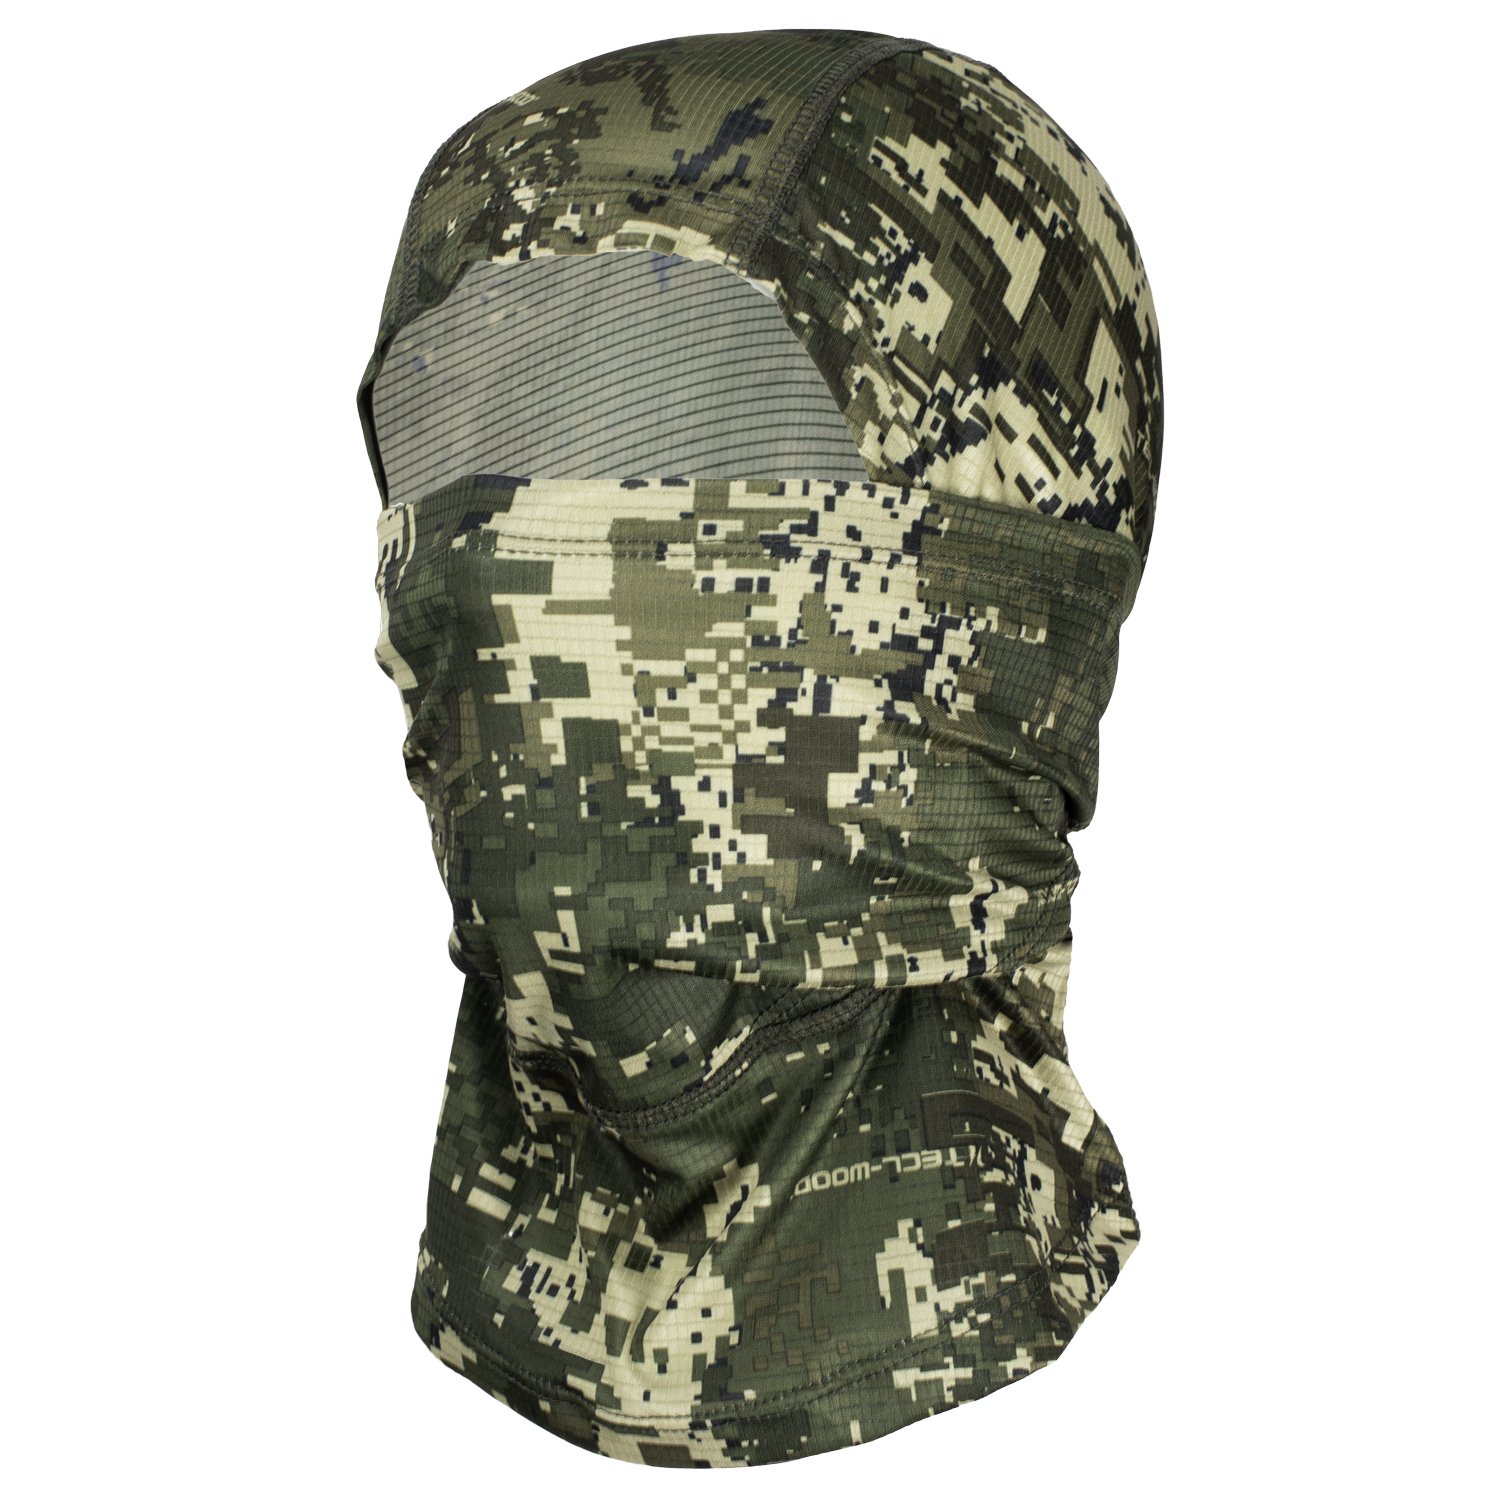  Pirscher Gear Ultralicht camouflagemasker (Optimax) - Stalkjacht